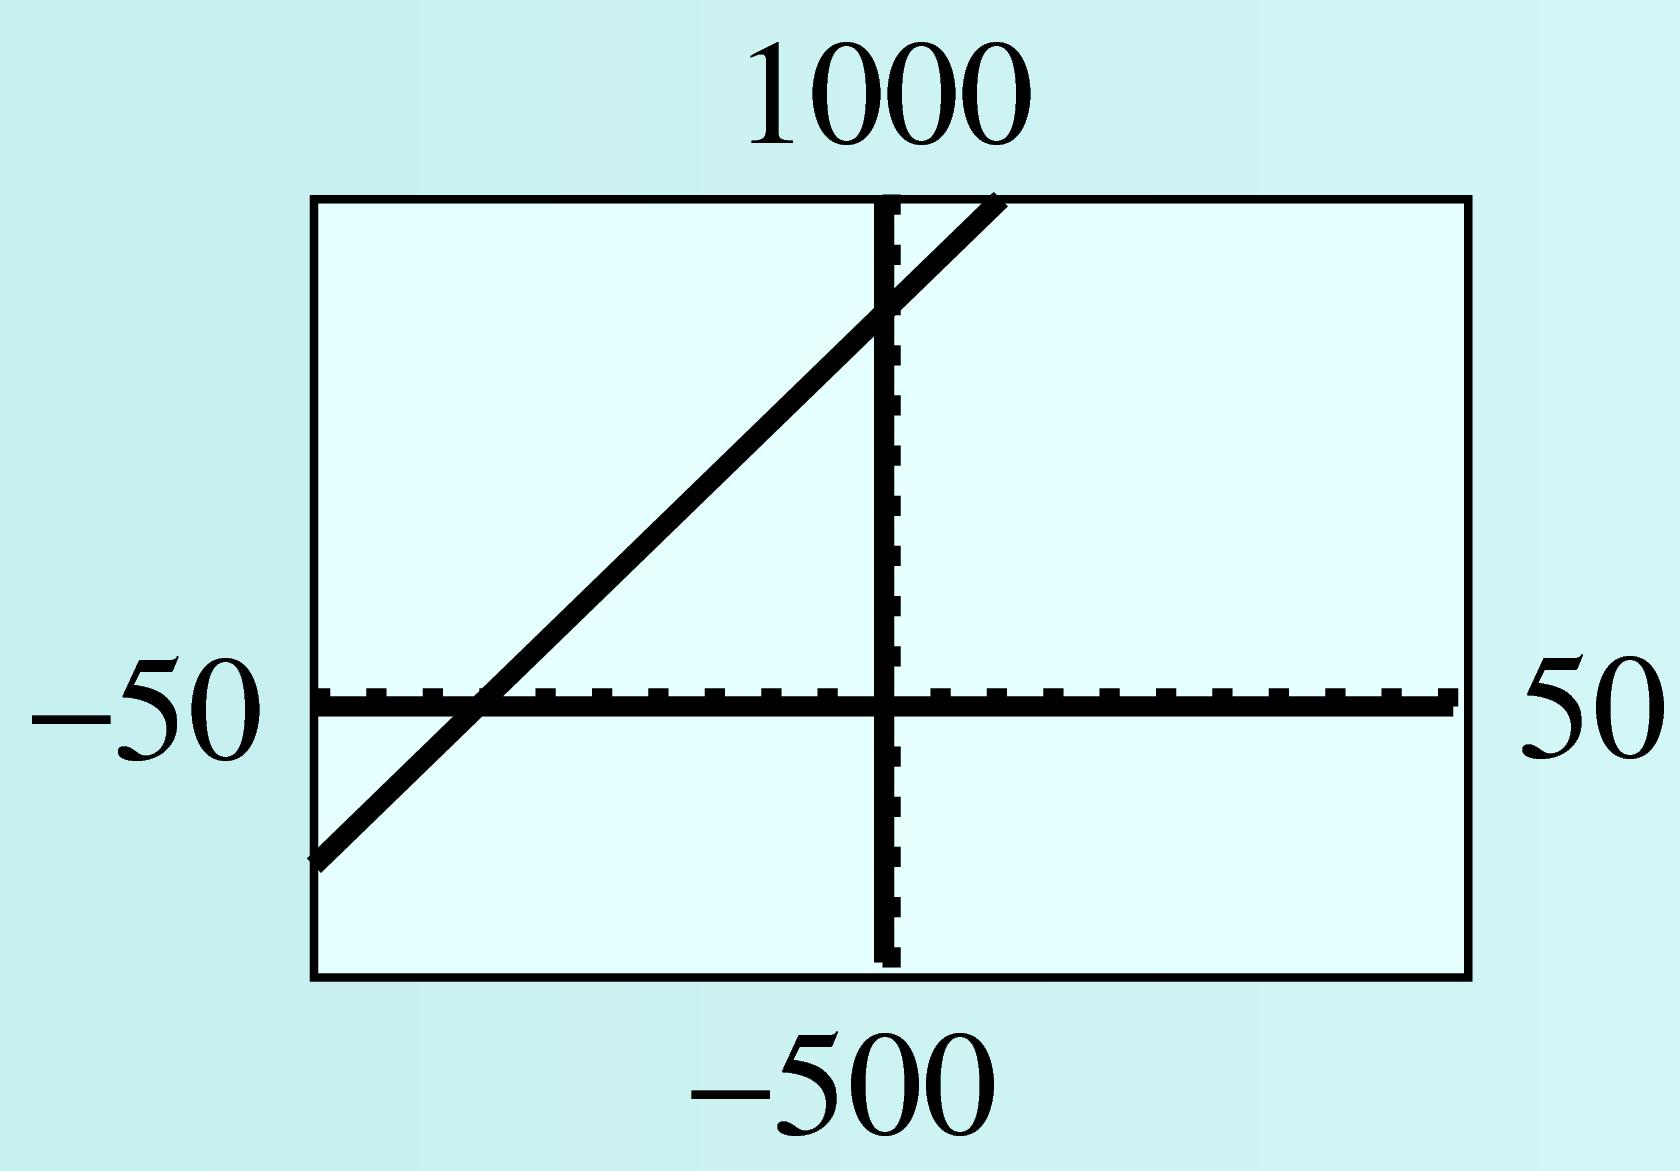 GC graph